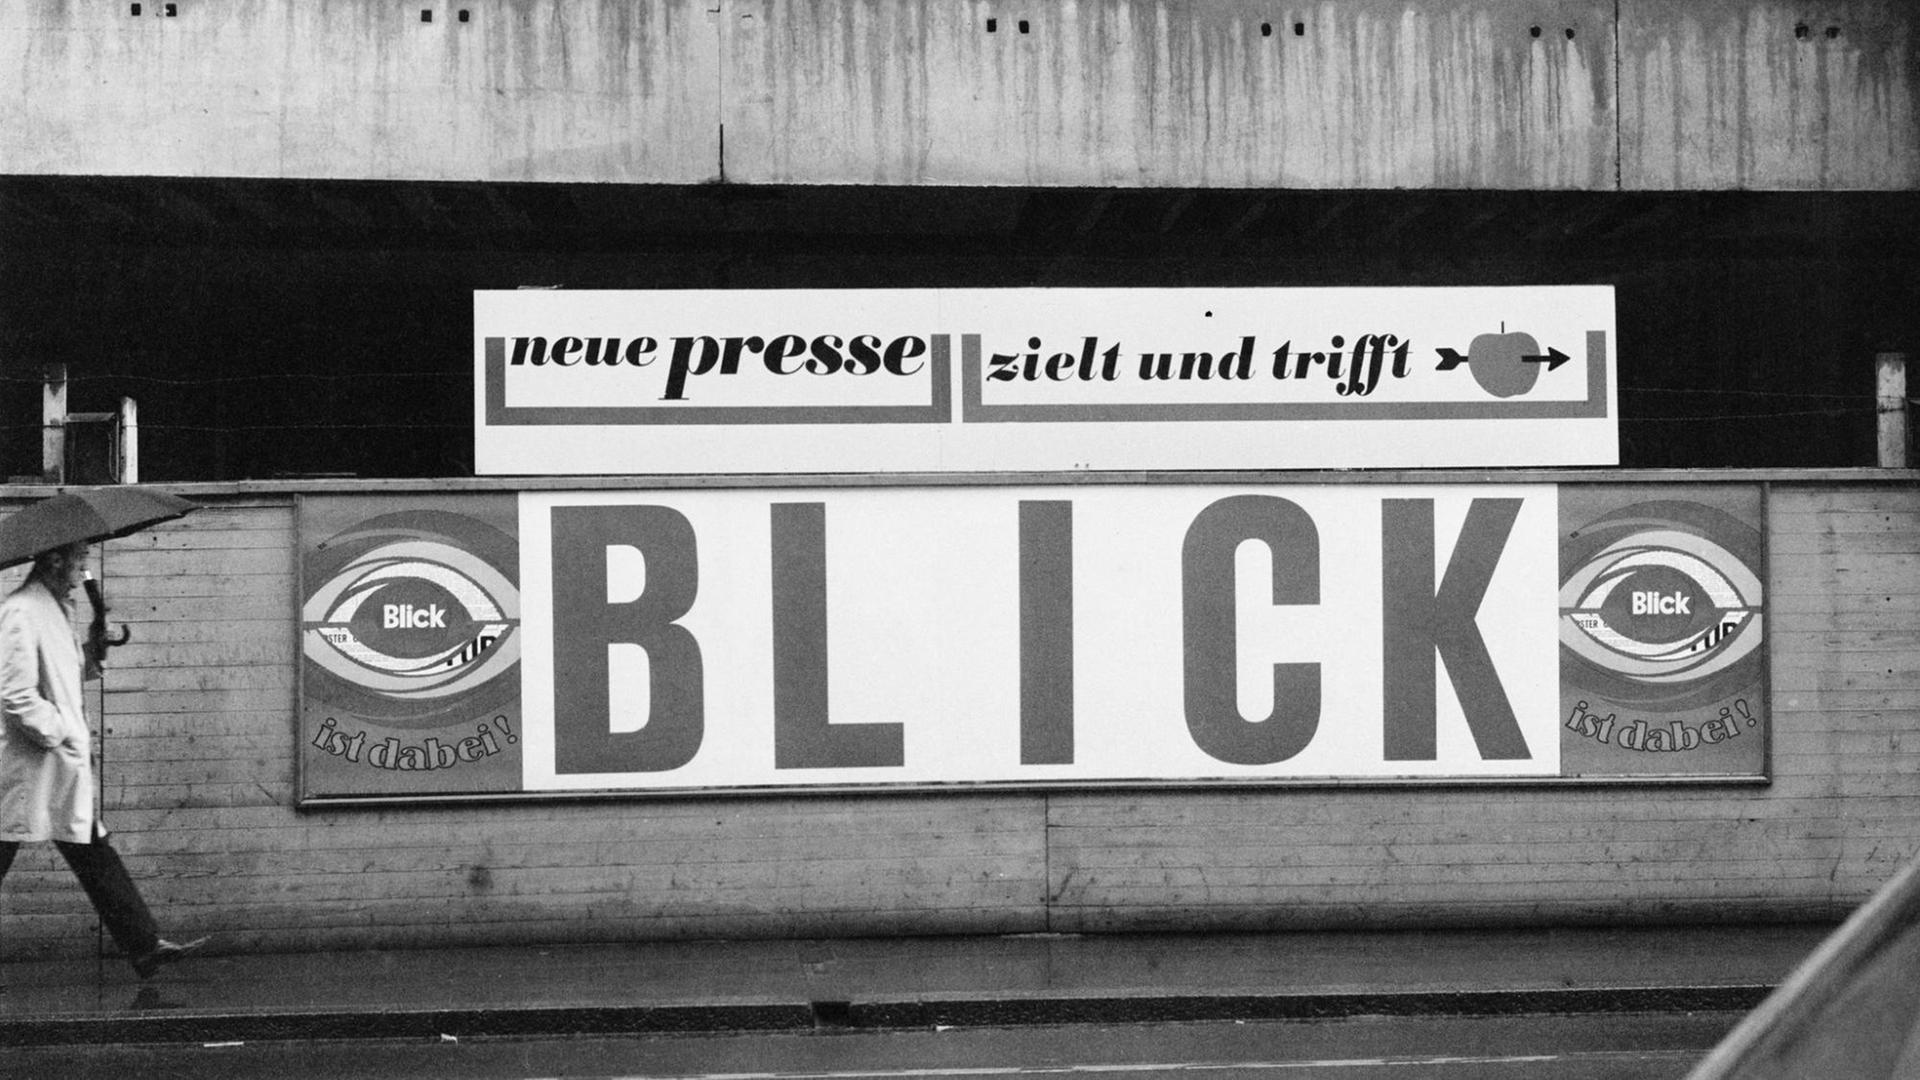 Plakatwerbung der schweizerischen Tageszeitung "Blick" 1967 in Basel mit dem Werbespruch: "Neue Presse zielt und trifft".